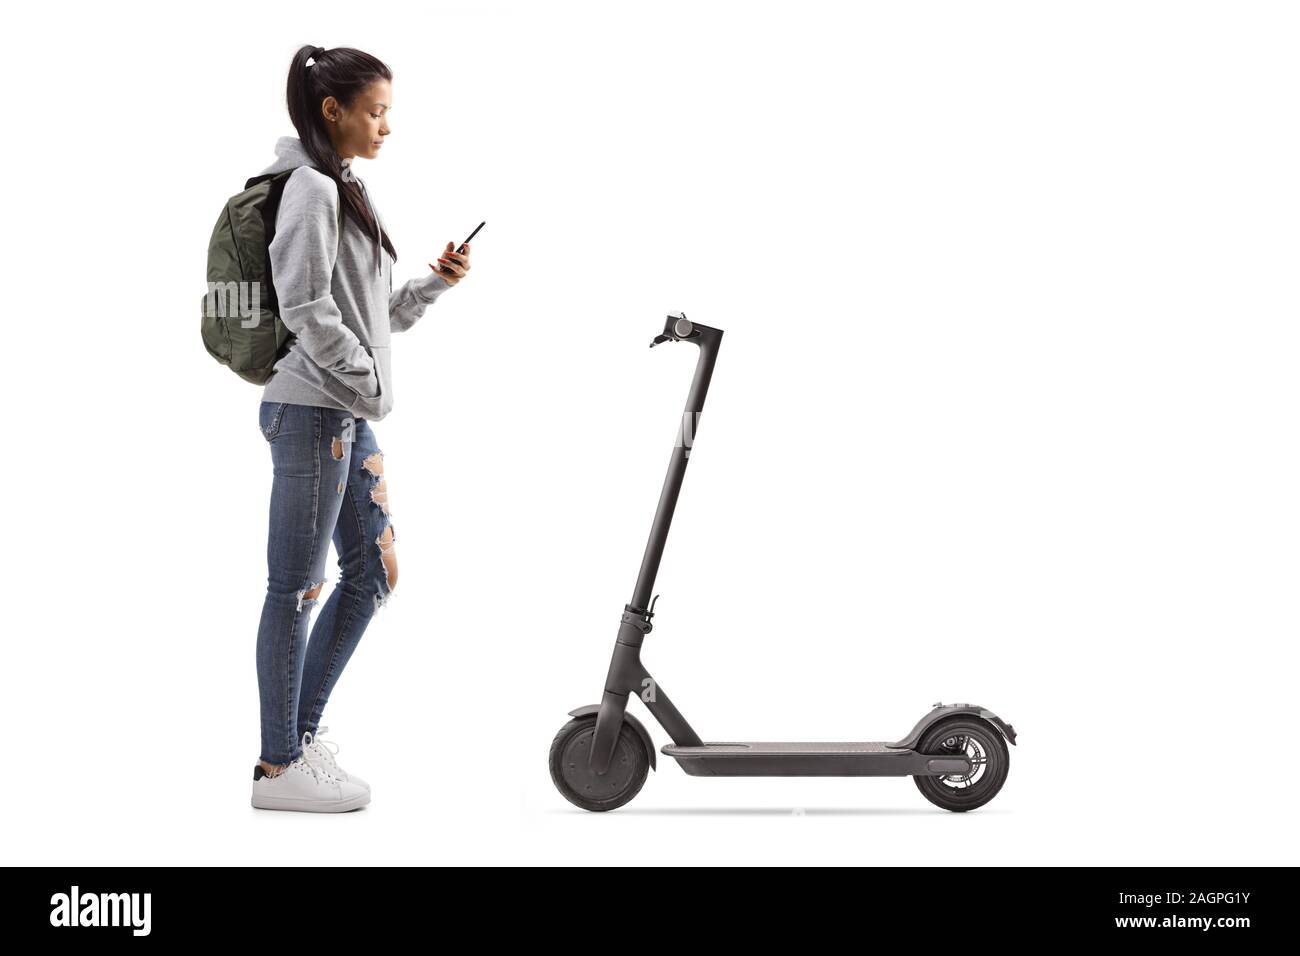 Perfil de longitud completa la foto de un estudiante alquilar un scooter eléctrico con un teléfono móvil aislado sobre fondo blanco. Foto de stock